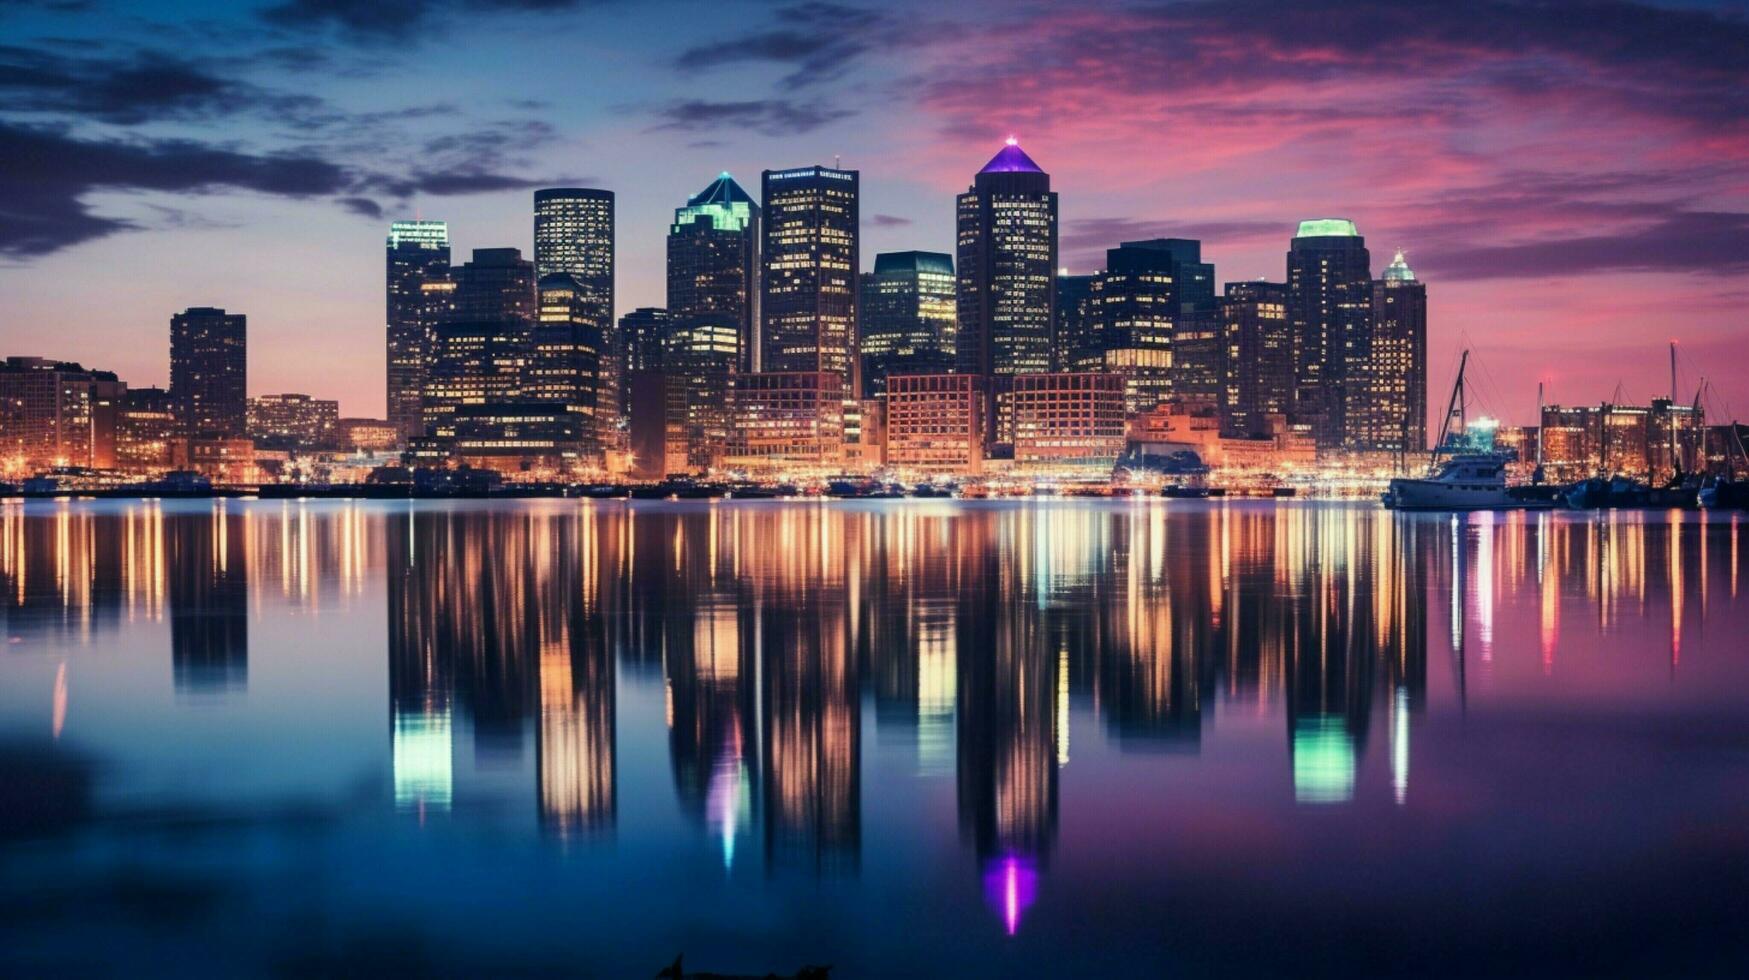 illuminated city skyline reflects on waterfront at dusk photo